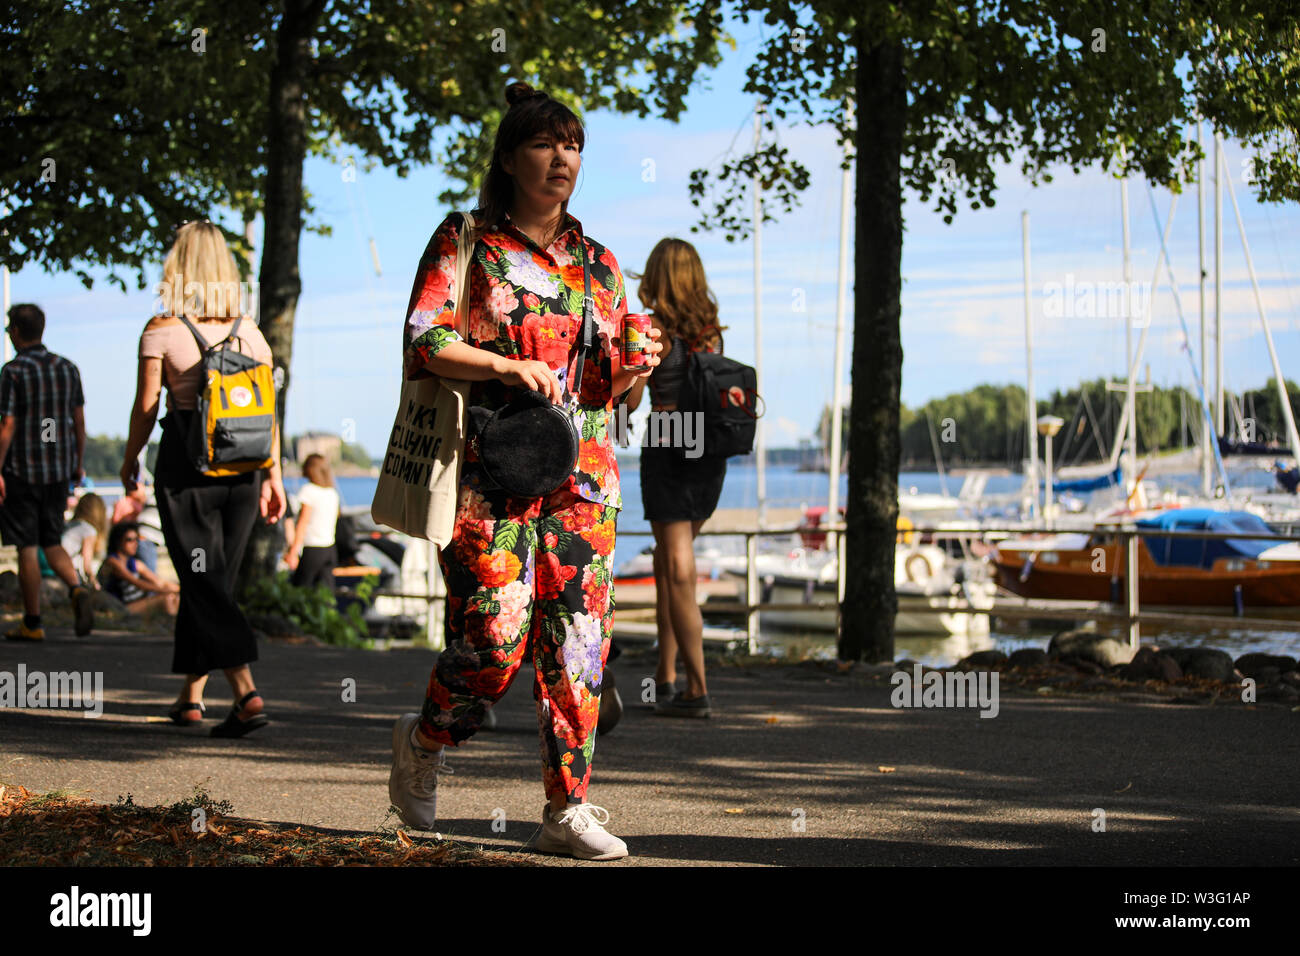 Jeune femme en été avec un chiffons de comparaison peuvent se promener le long de l'Merihaka sider station pendant Kallio Block Party 2018 à Helsinki, Finlande Banque D'Images